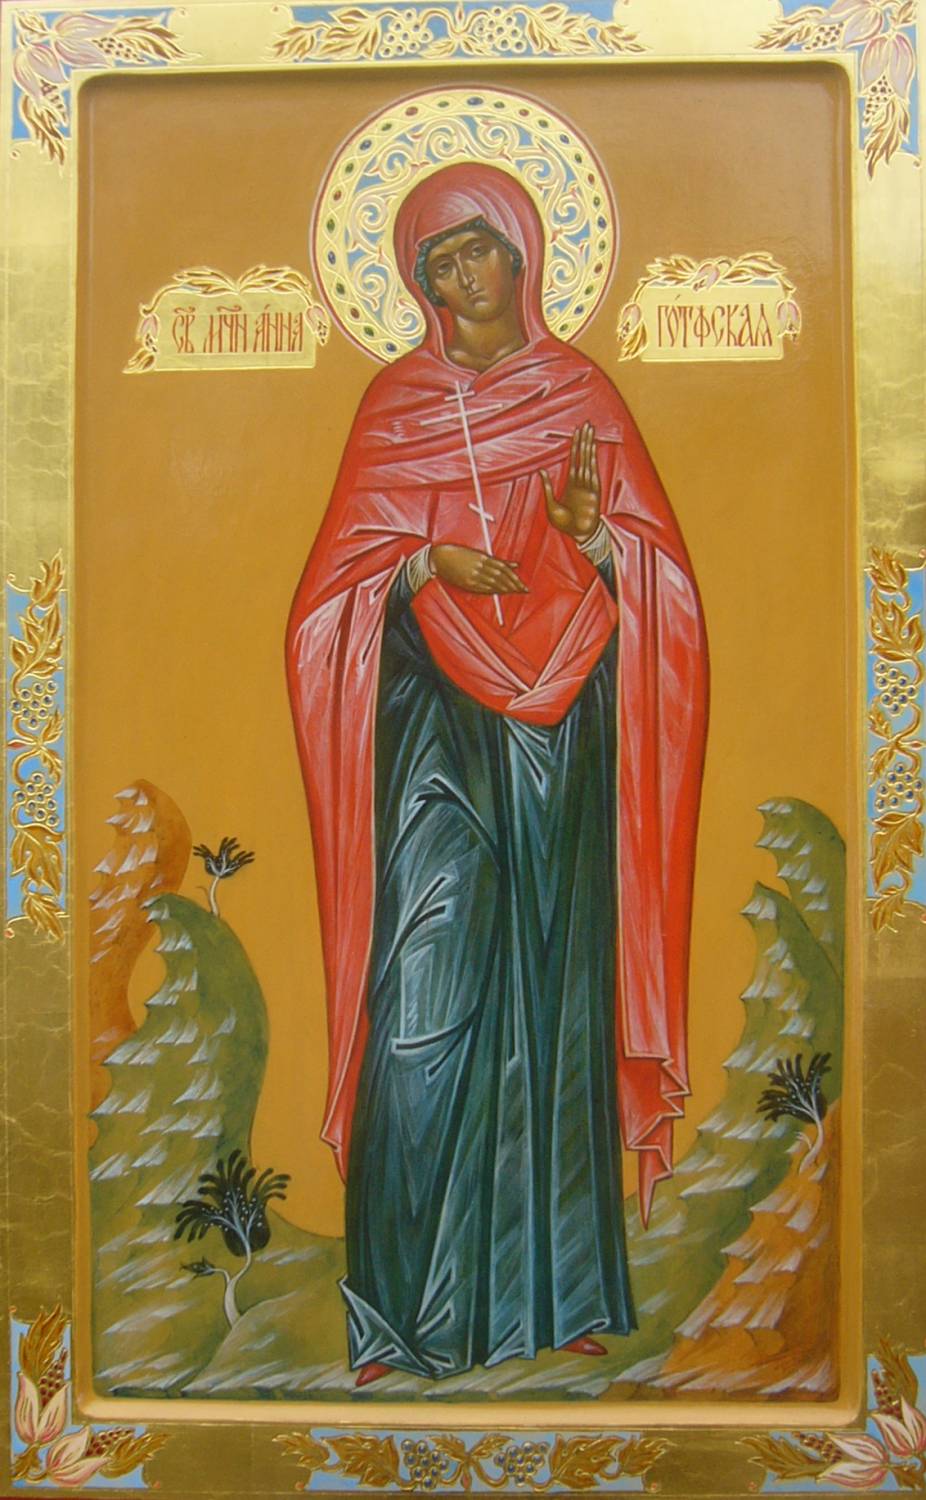  Martyr Agnia Roman, vars namn Saints erbjuder för juliflickor